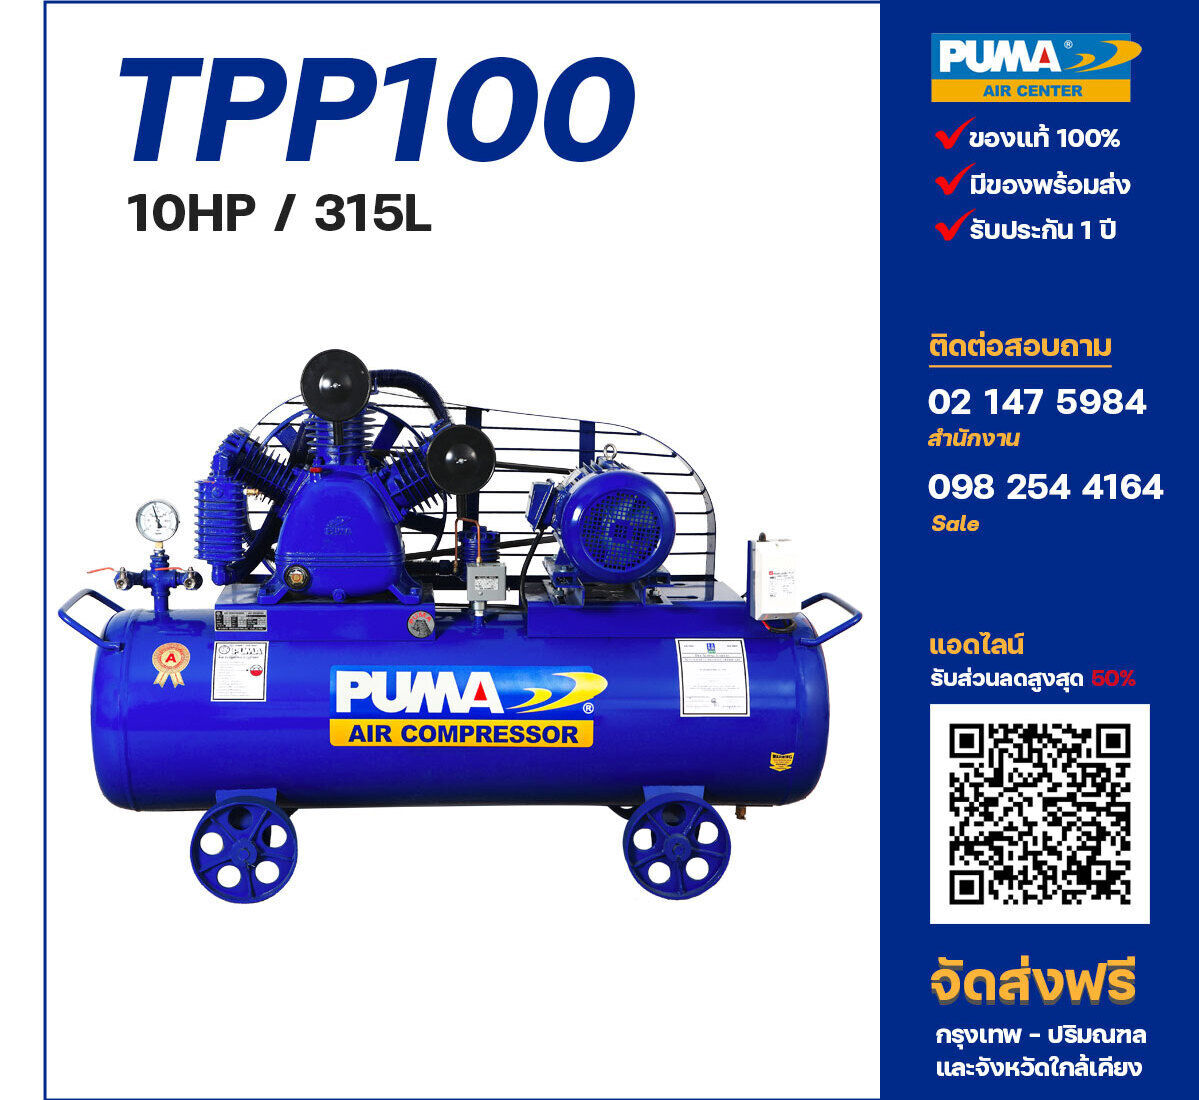 ปั๊มลมพูม่าแรงดันสูง PUMA Two-Stage TPP-100 ปั๊มลมลูกสูบ ขนาด 3 สูบ 10 แรงม้า 315 ลิตร PUMA พร้อมมอเตอร์ PUMA ไฟ 380V ส่งฟรี กรุงเทพฯ-ปริมณฑล รับประกัน 1 ปี